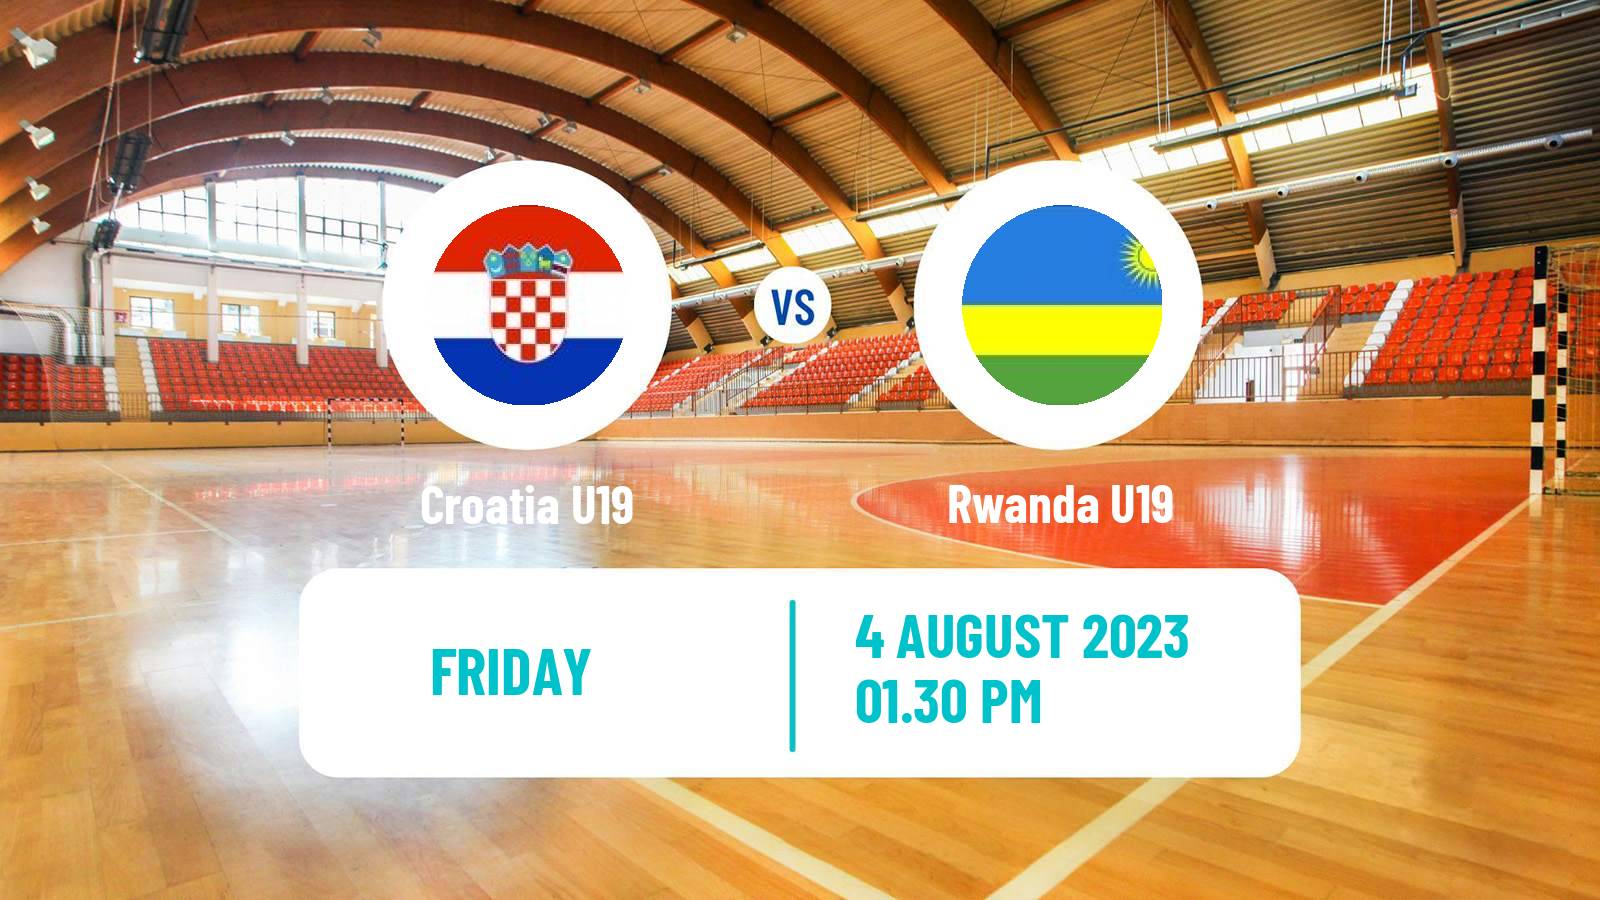 Handball World Championship U19 Handball Croatia U19 - Rwanda U19